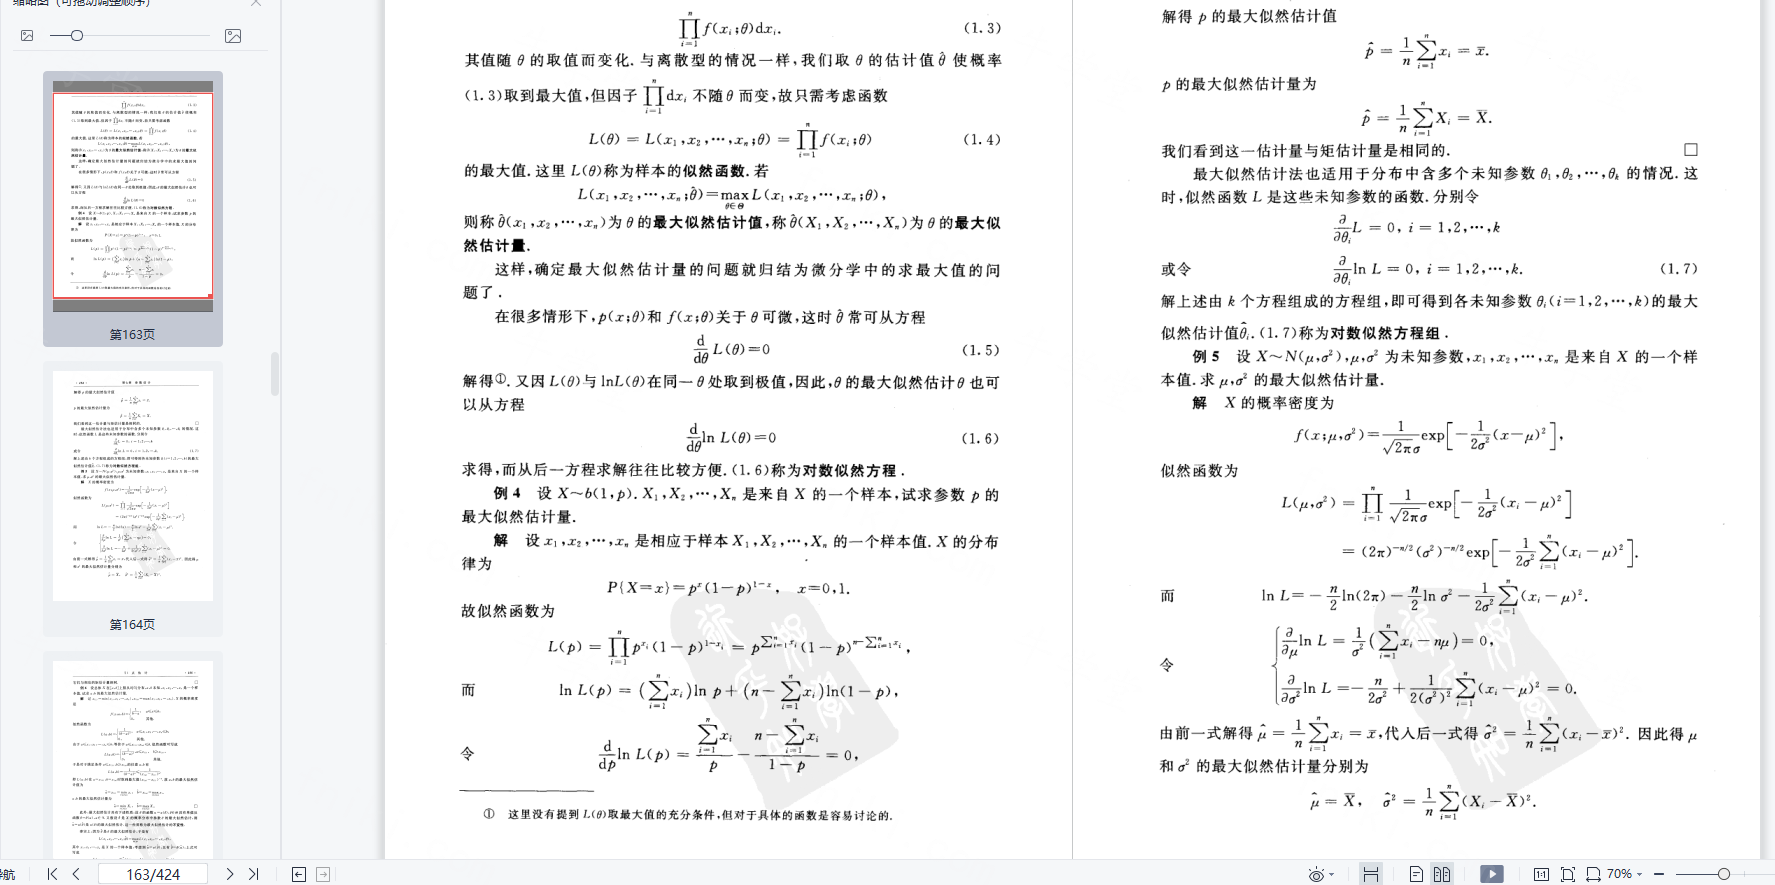 高等数学考研概率论与数理统计习题答案全解pdf(浙大第四版教材)